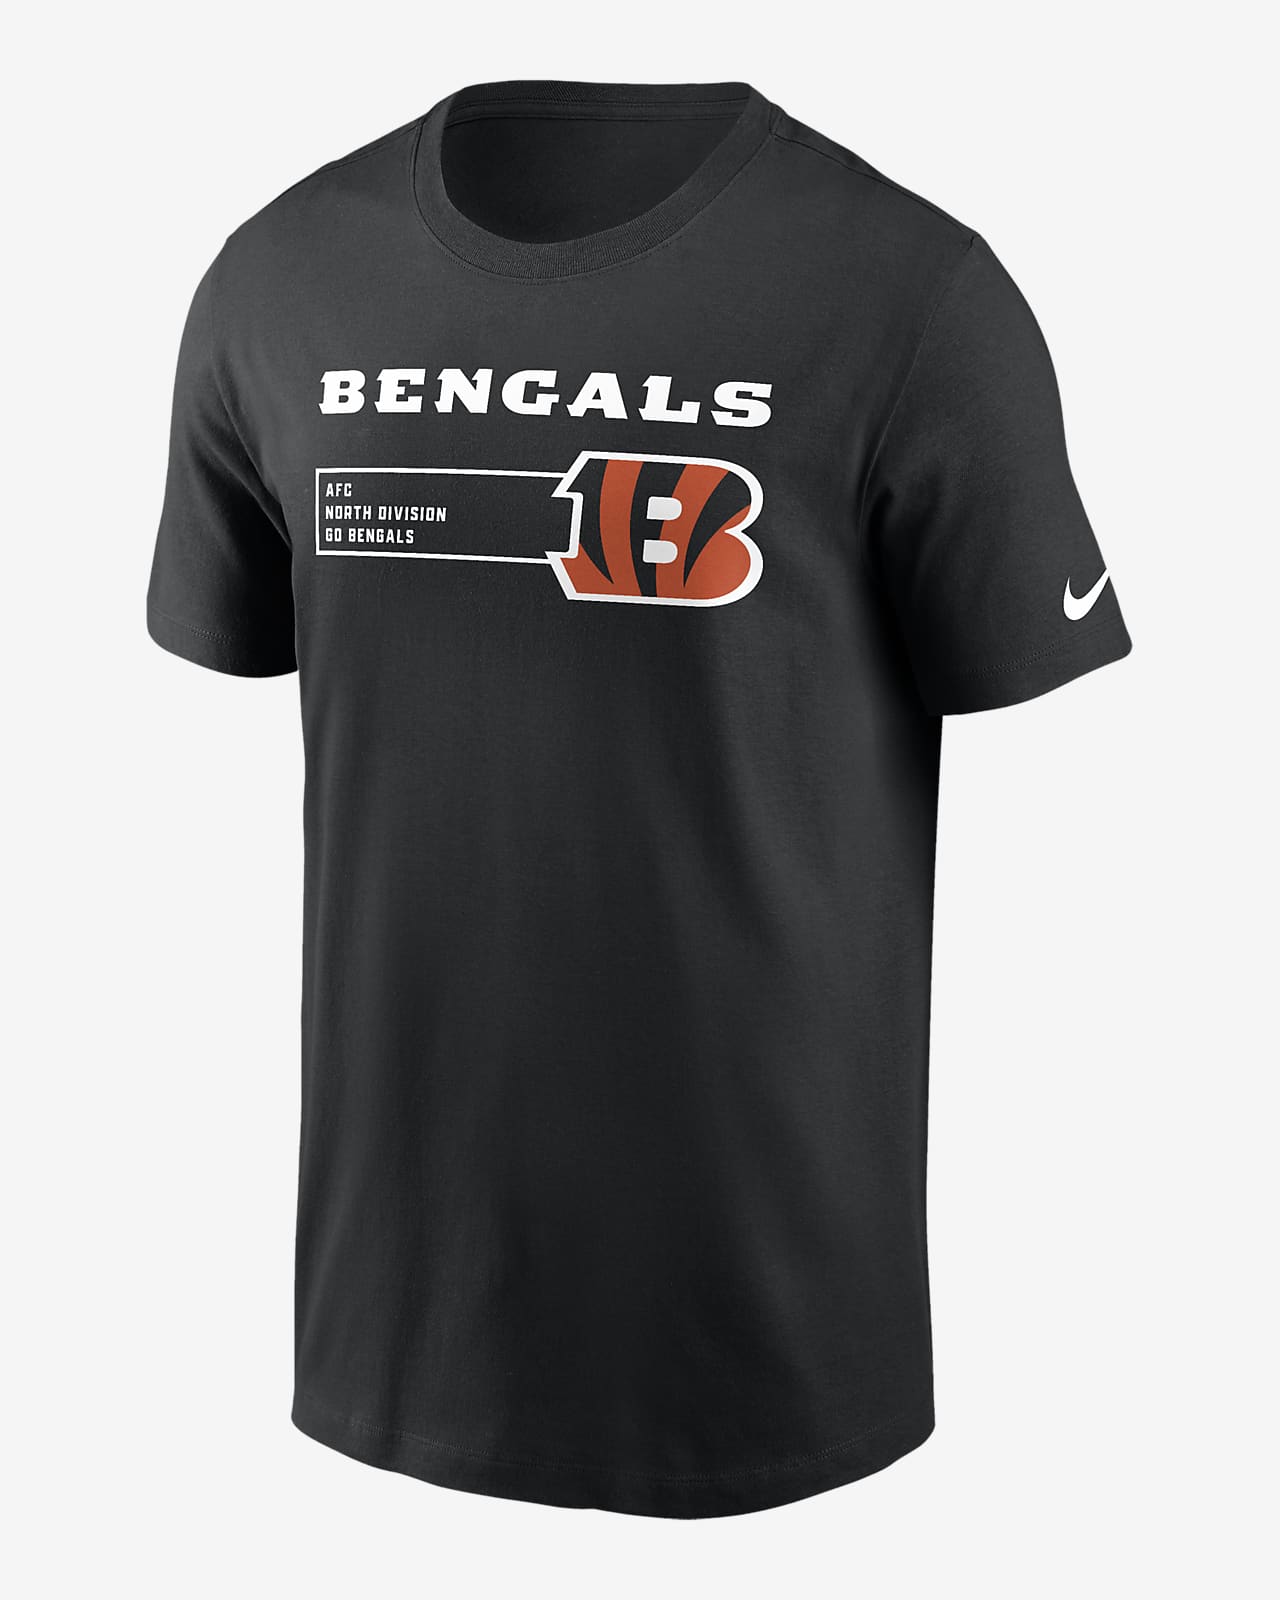 Playera Nike NFL para hombre Cincinnati Bengals Division Essential